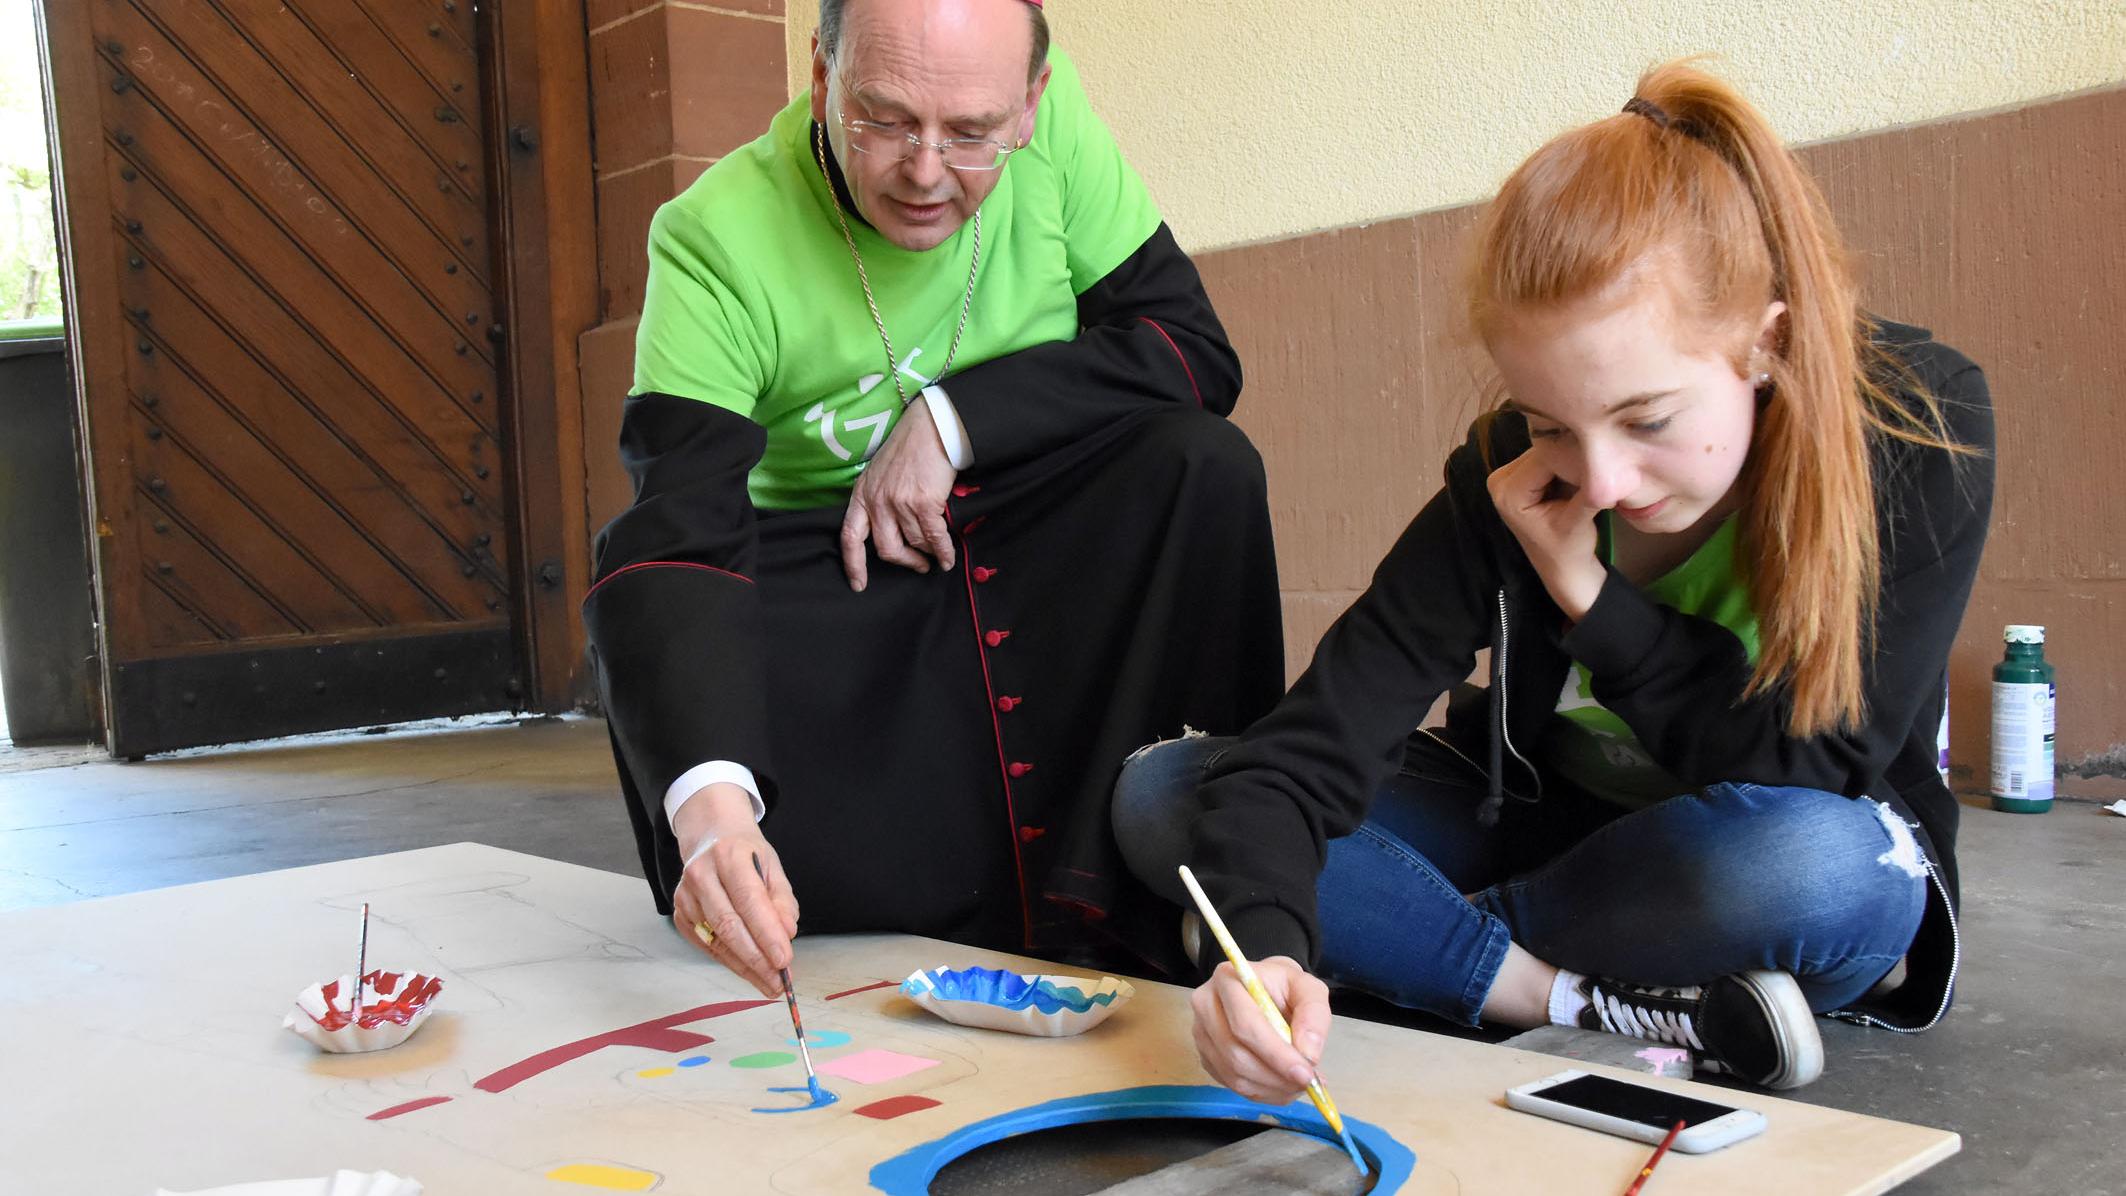 Weihbischof Robert Brahm hat sich bei seinem Besuch selbst einen Pinsel geschnappt und den Jugendlichen geholfen. (Foto: Hans Georg Schneider)